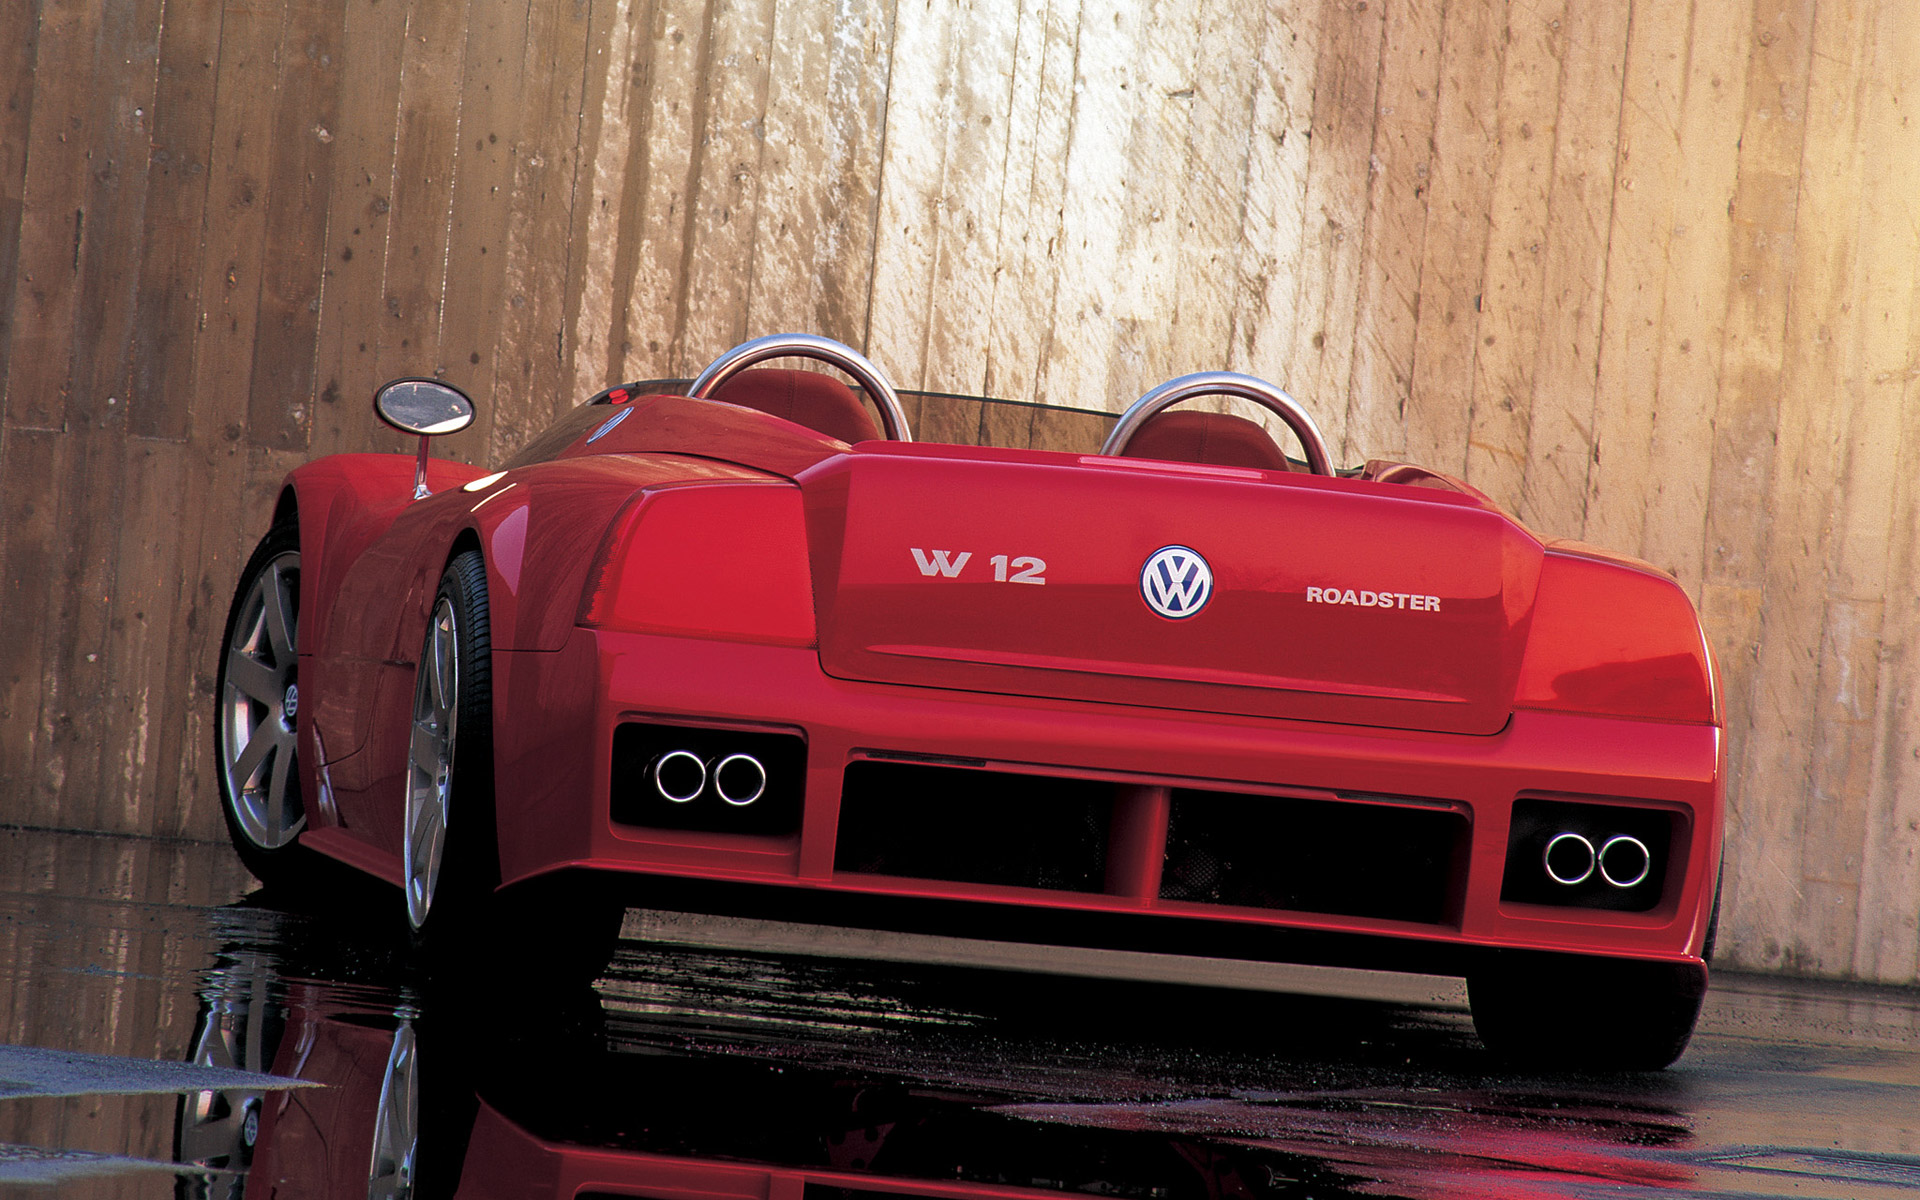  1998 Volkswagen W12 Roadster Concept Wallpaper.